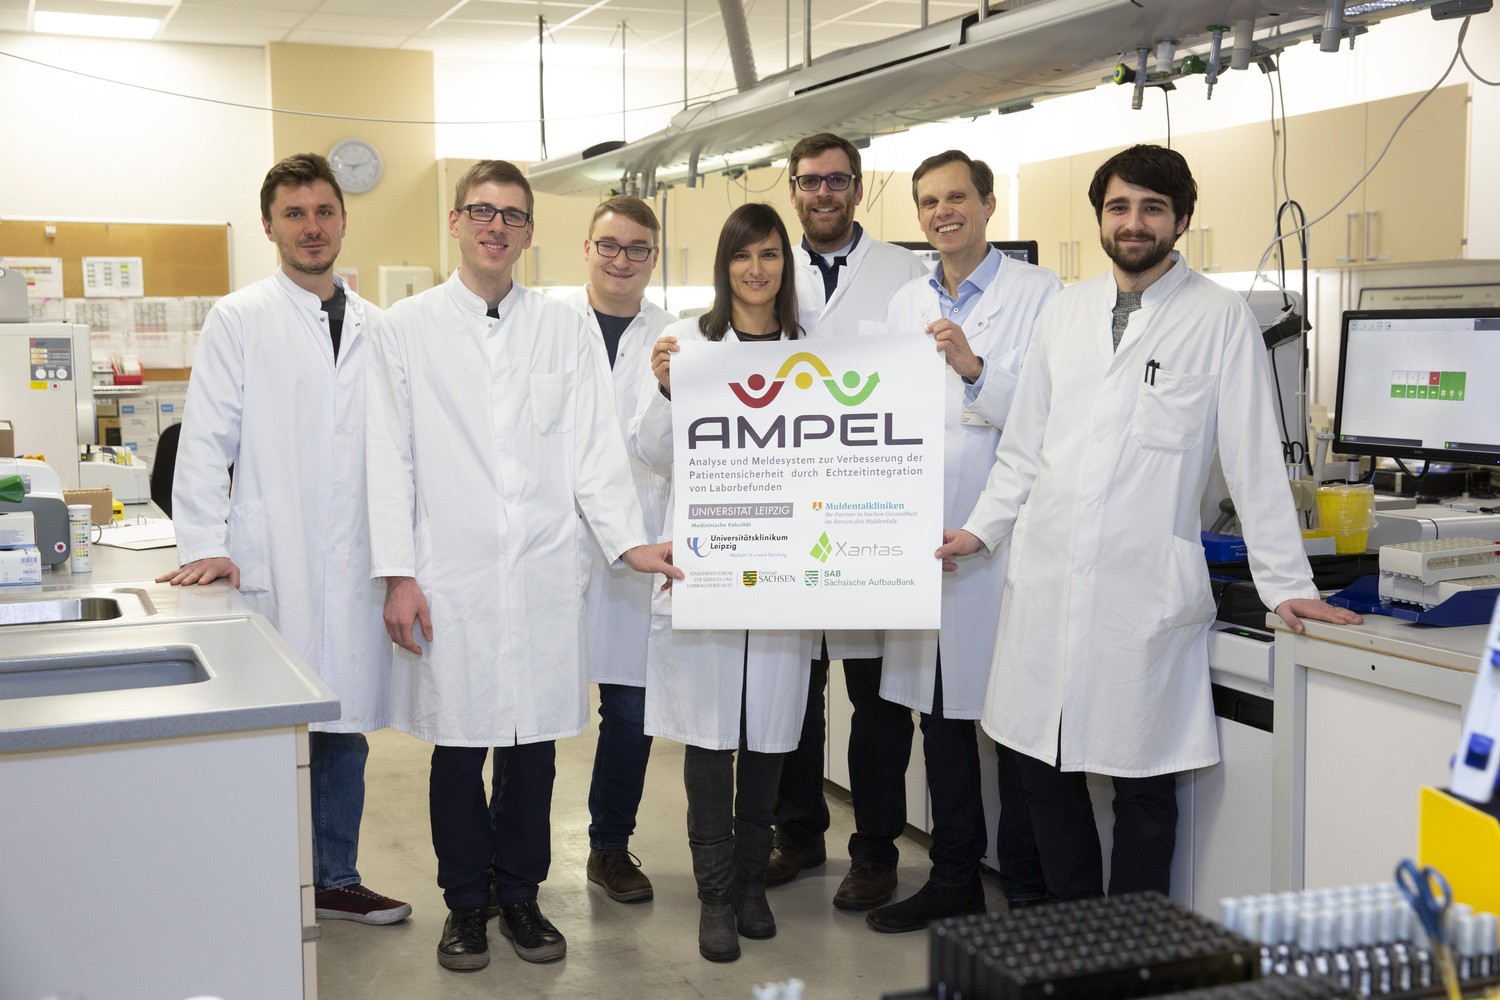 PD Dr. Thorsten Kaiser (2.v.r.) und sein Team ziehen nach einem Jahr AMPEL-Projekt eine erste positive Zwischenbilanz.